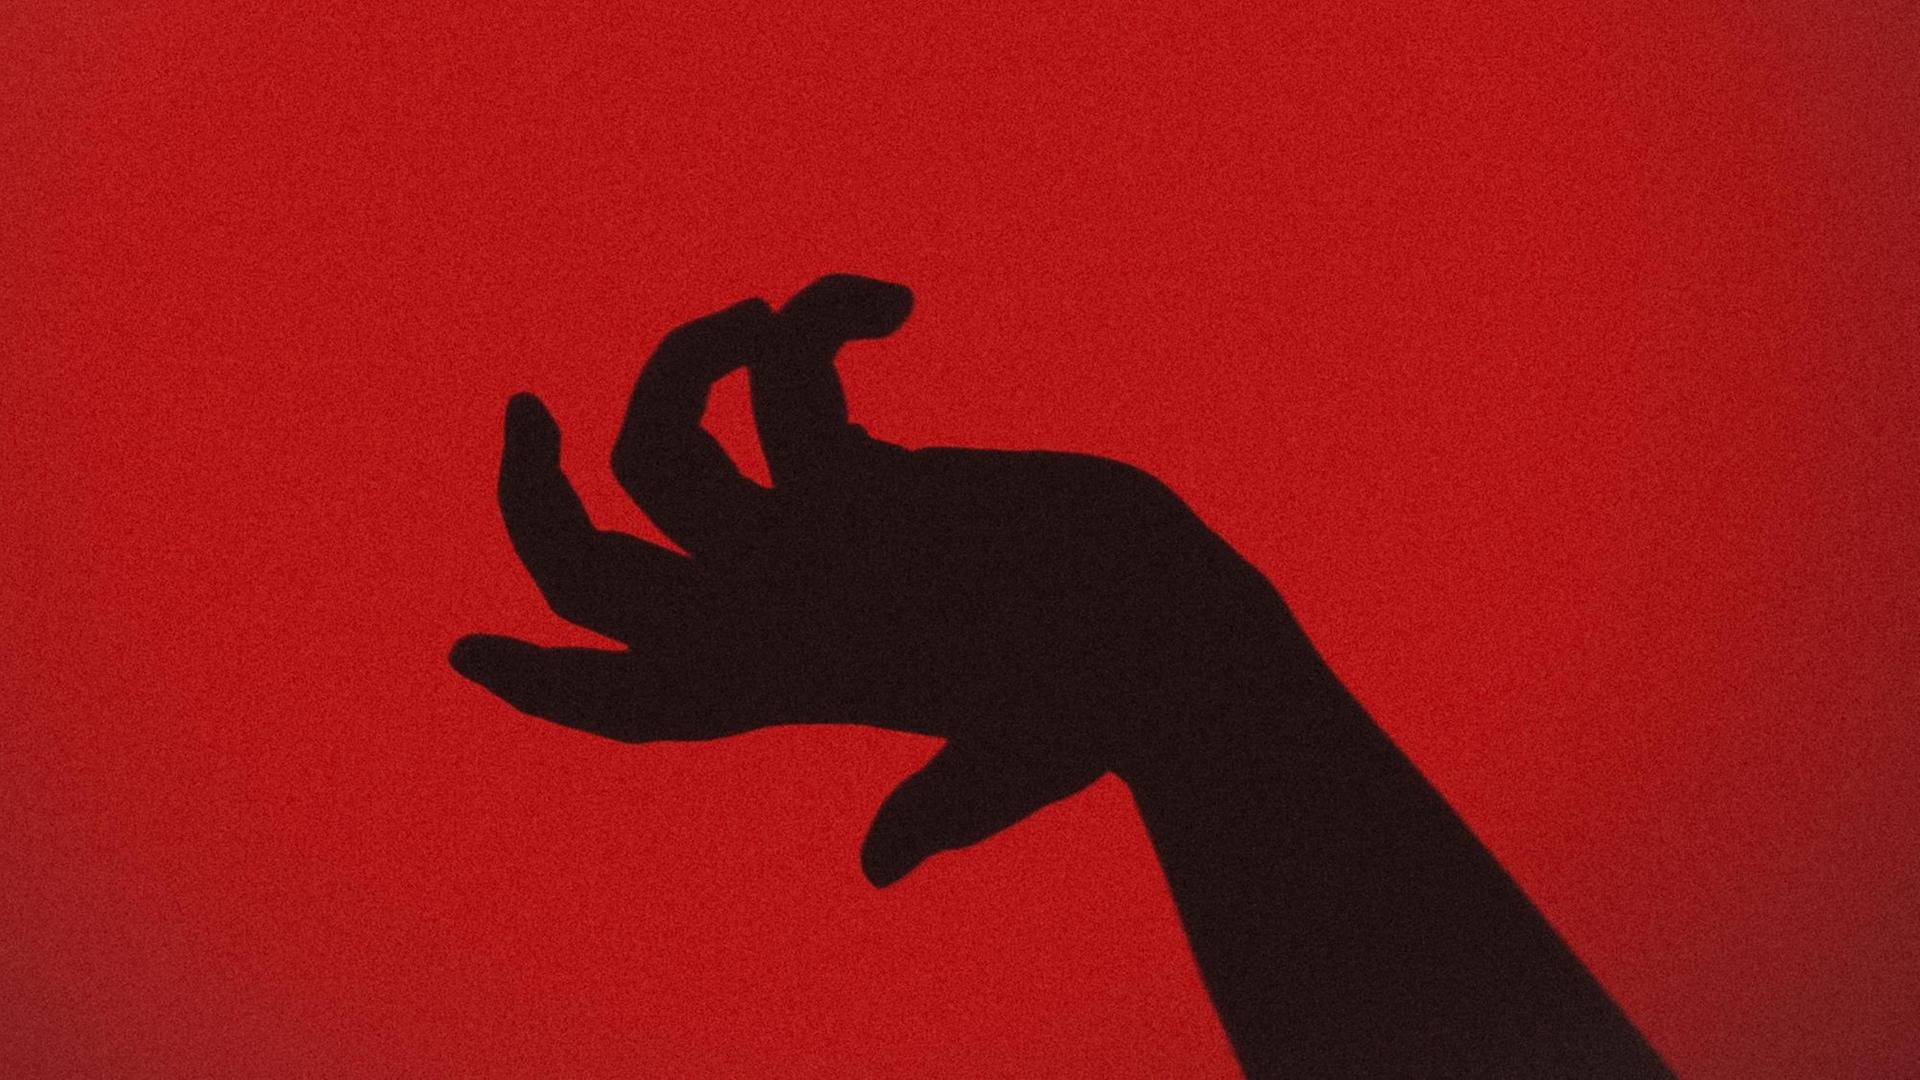 Die Silhouette einer Hand vor einem roten Hintergrund